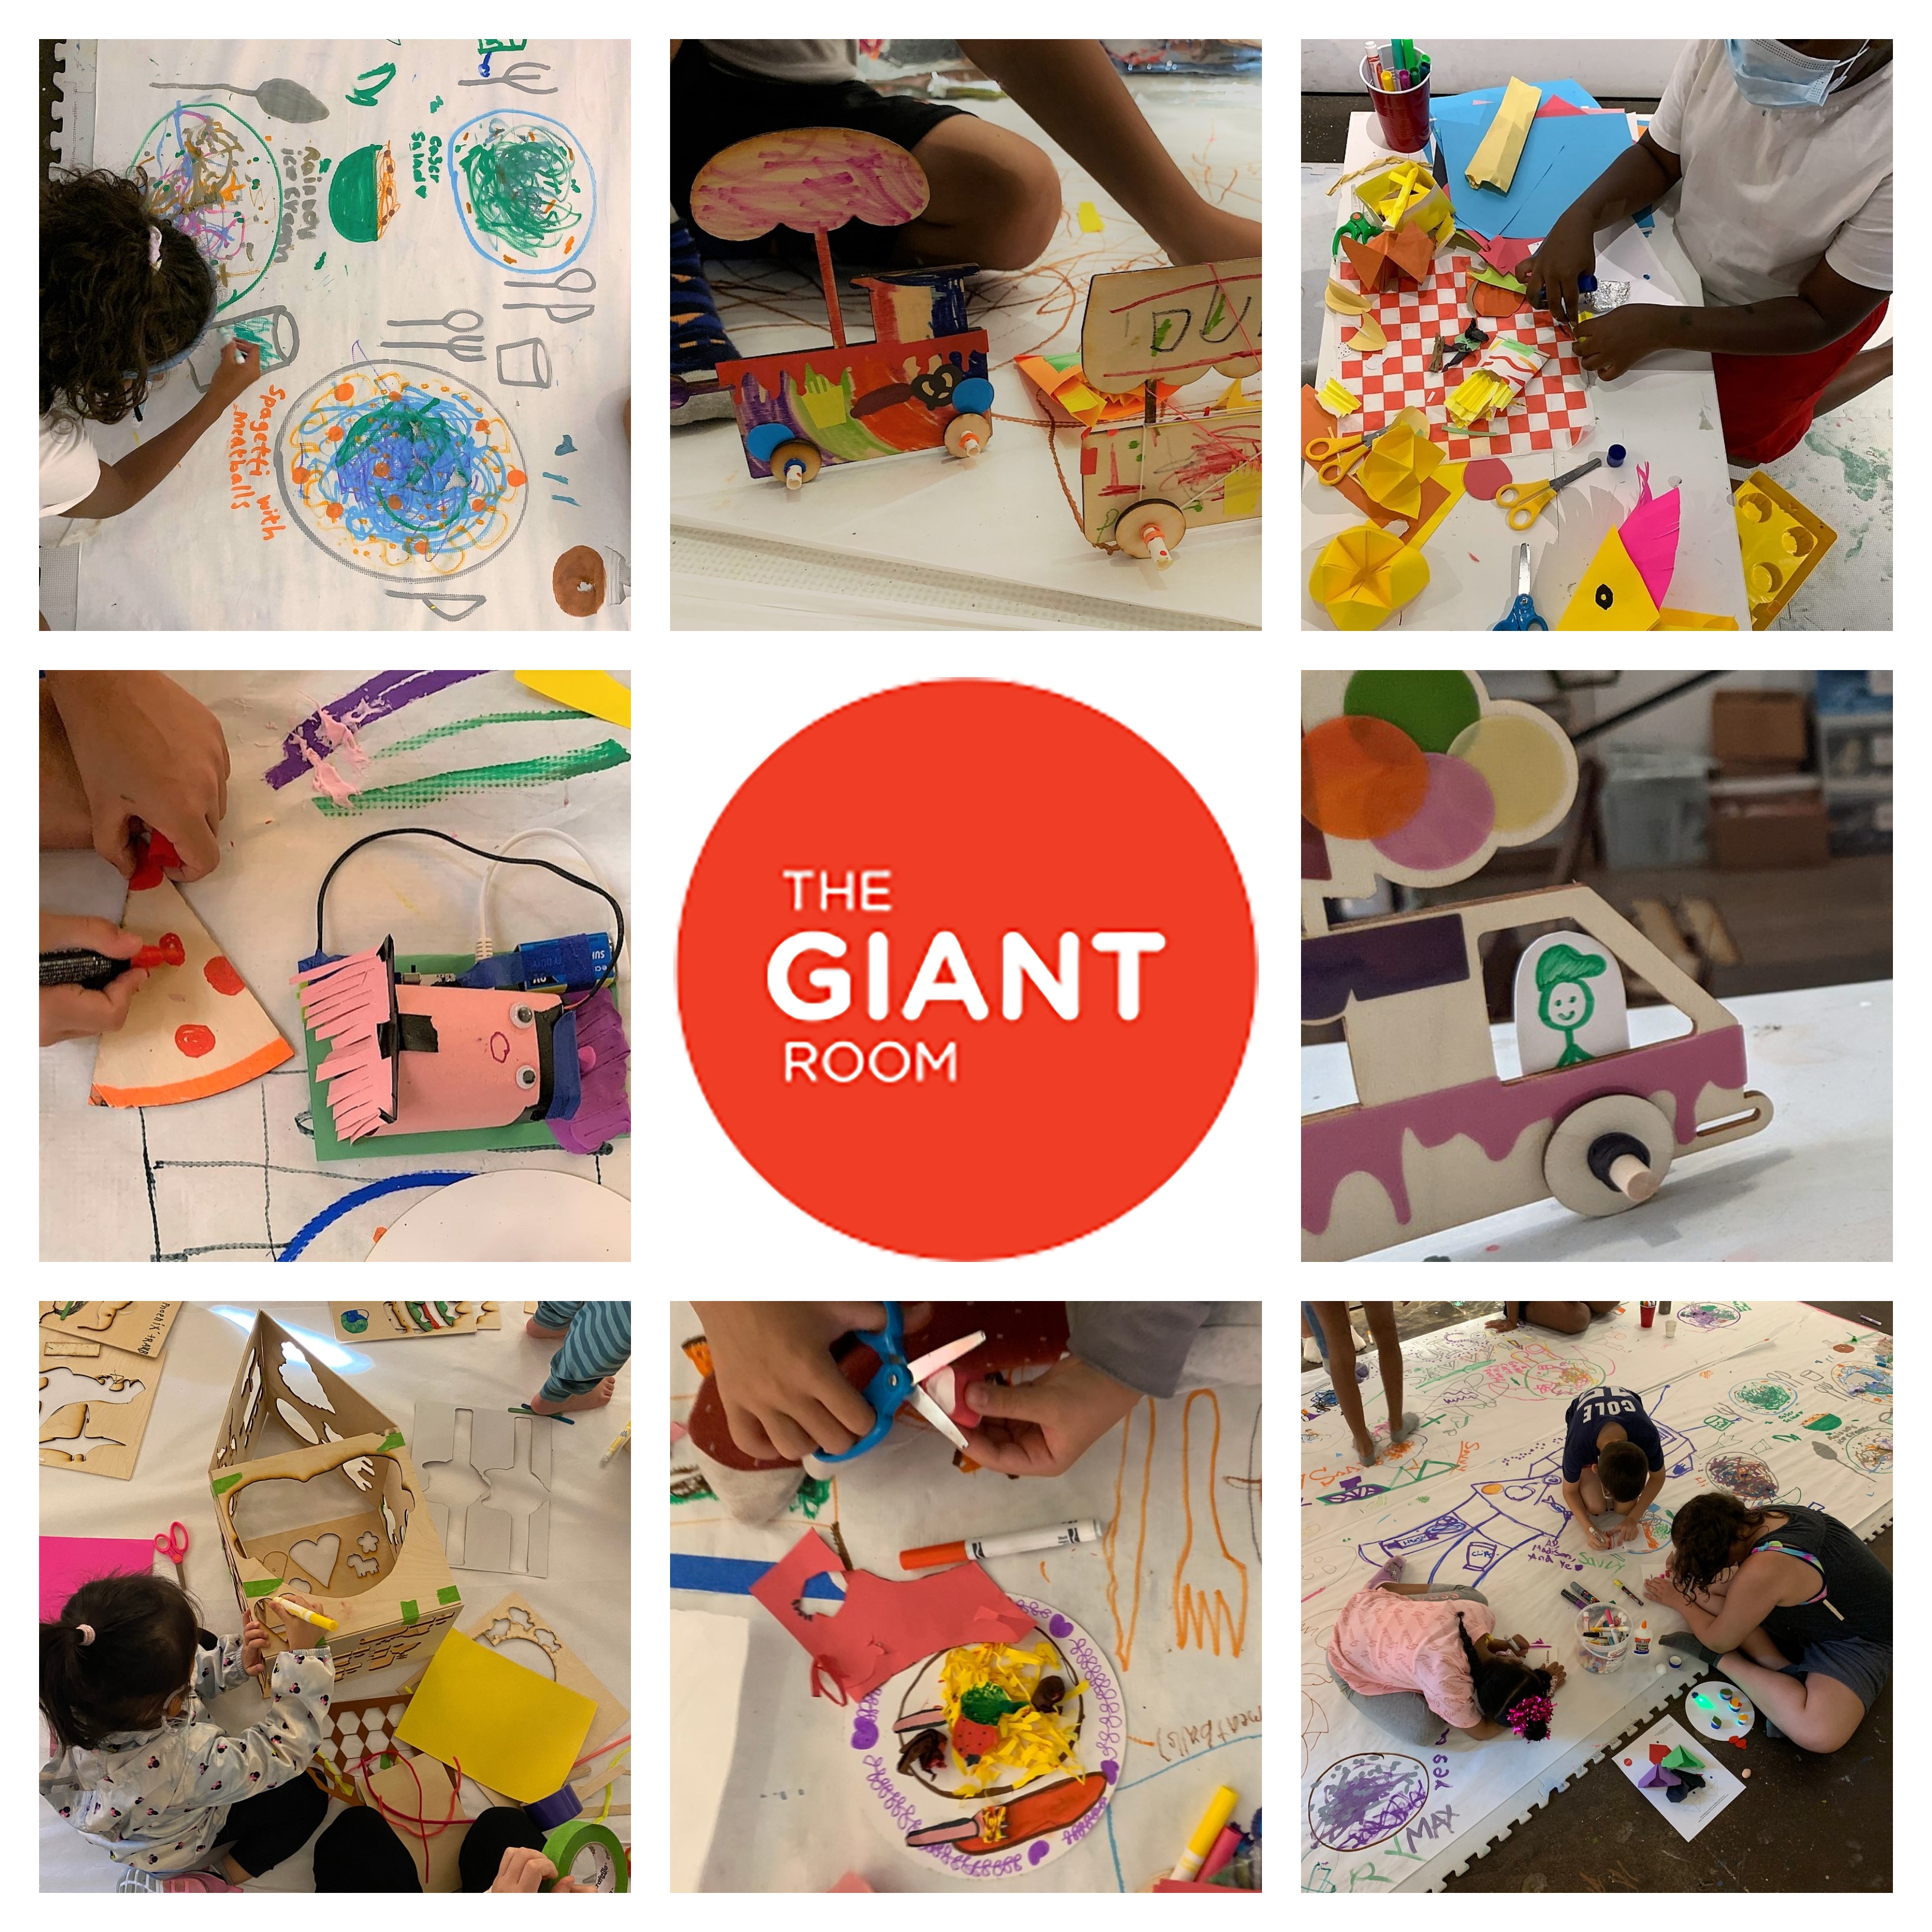 Les enfants dessinent et font de l'artisanat sur huit photos entourant un logo en forme de cercle rouge qui se lit, The Giant Room.